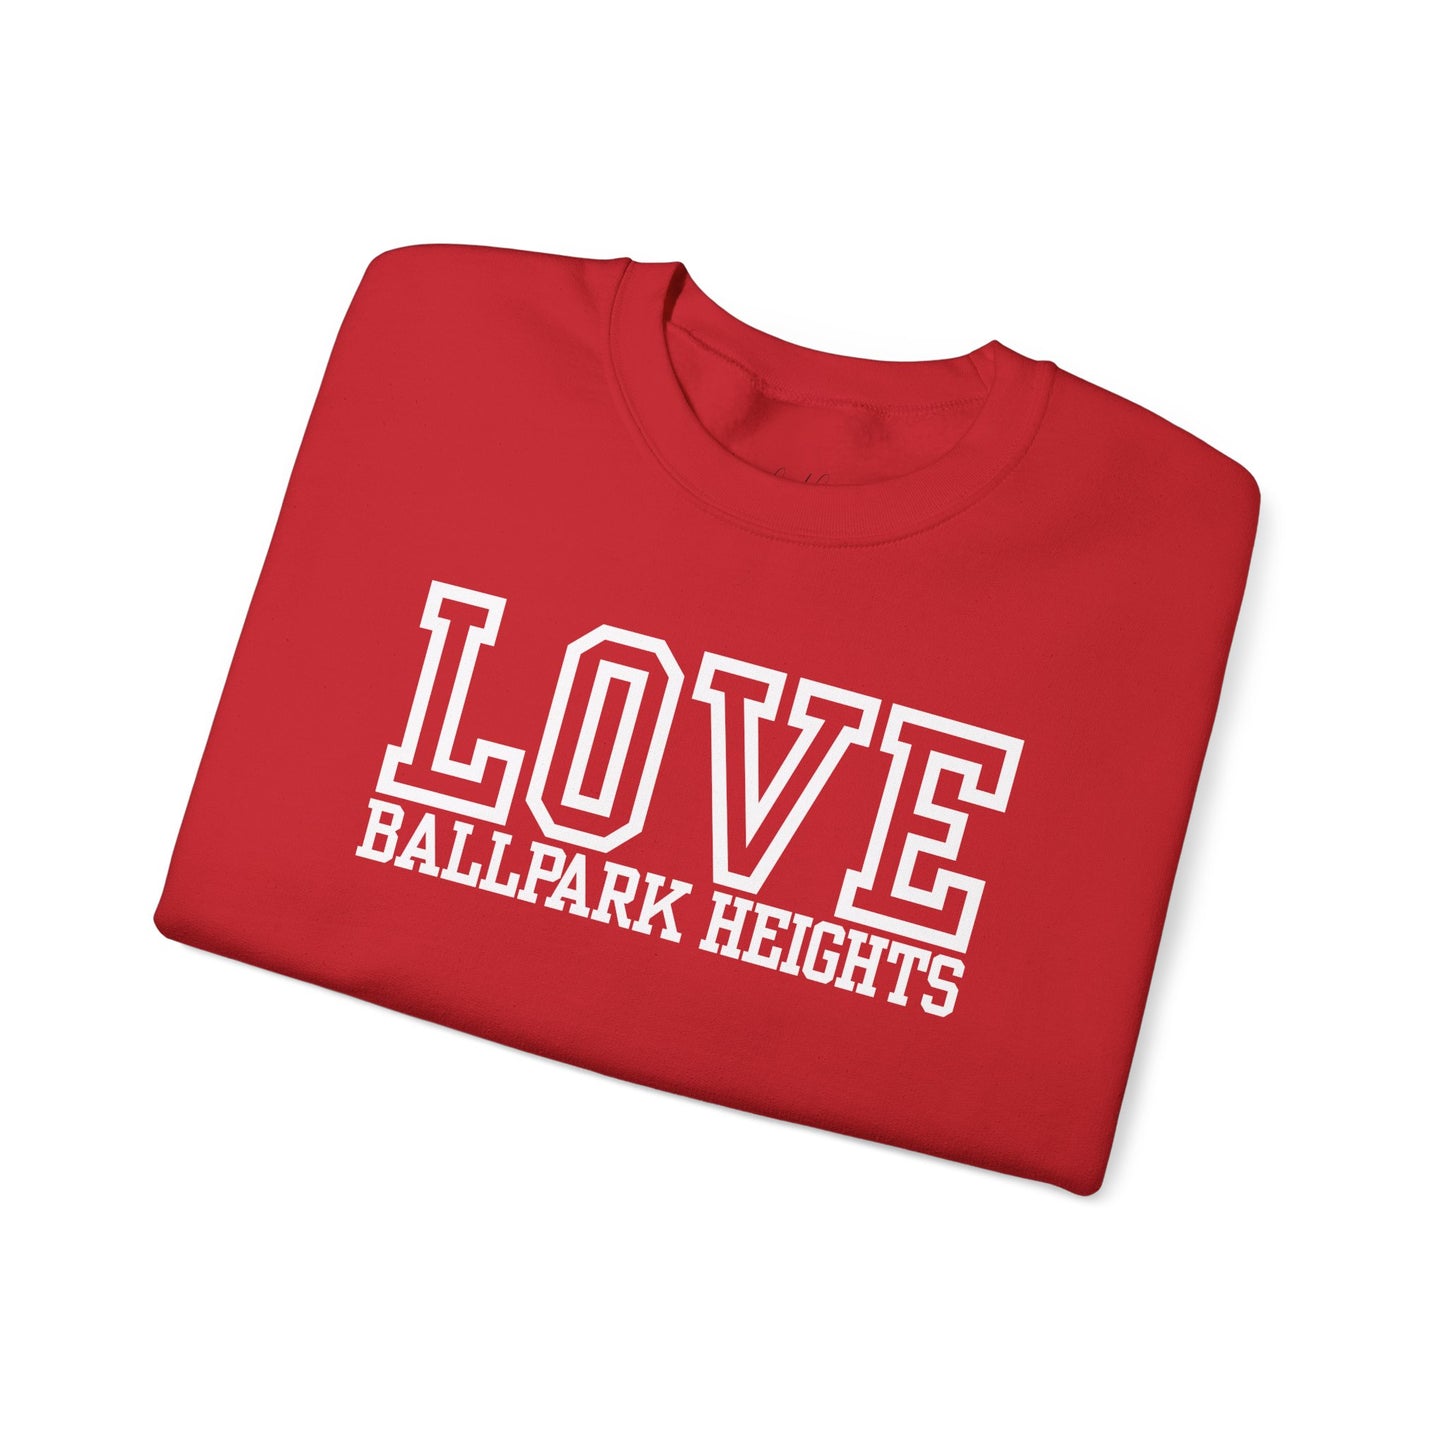 Love Ballpark Heights Varsity Sweatshirt